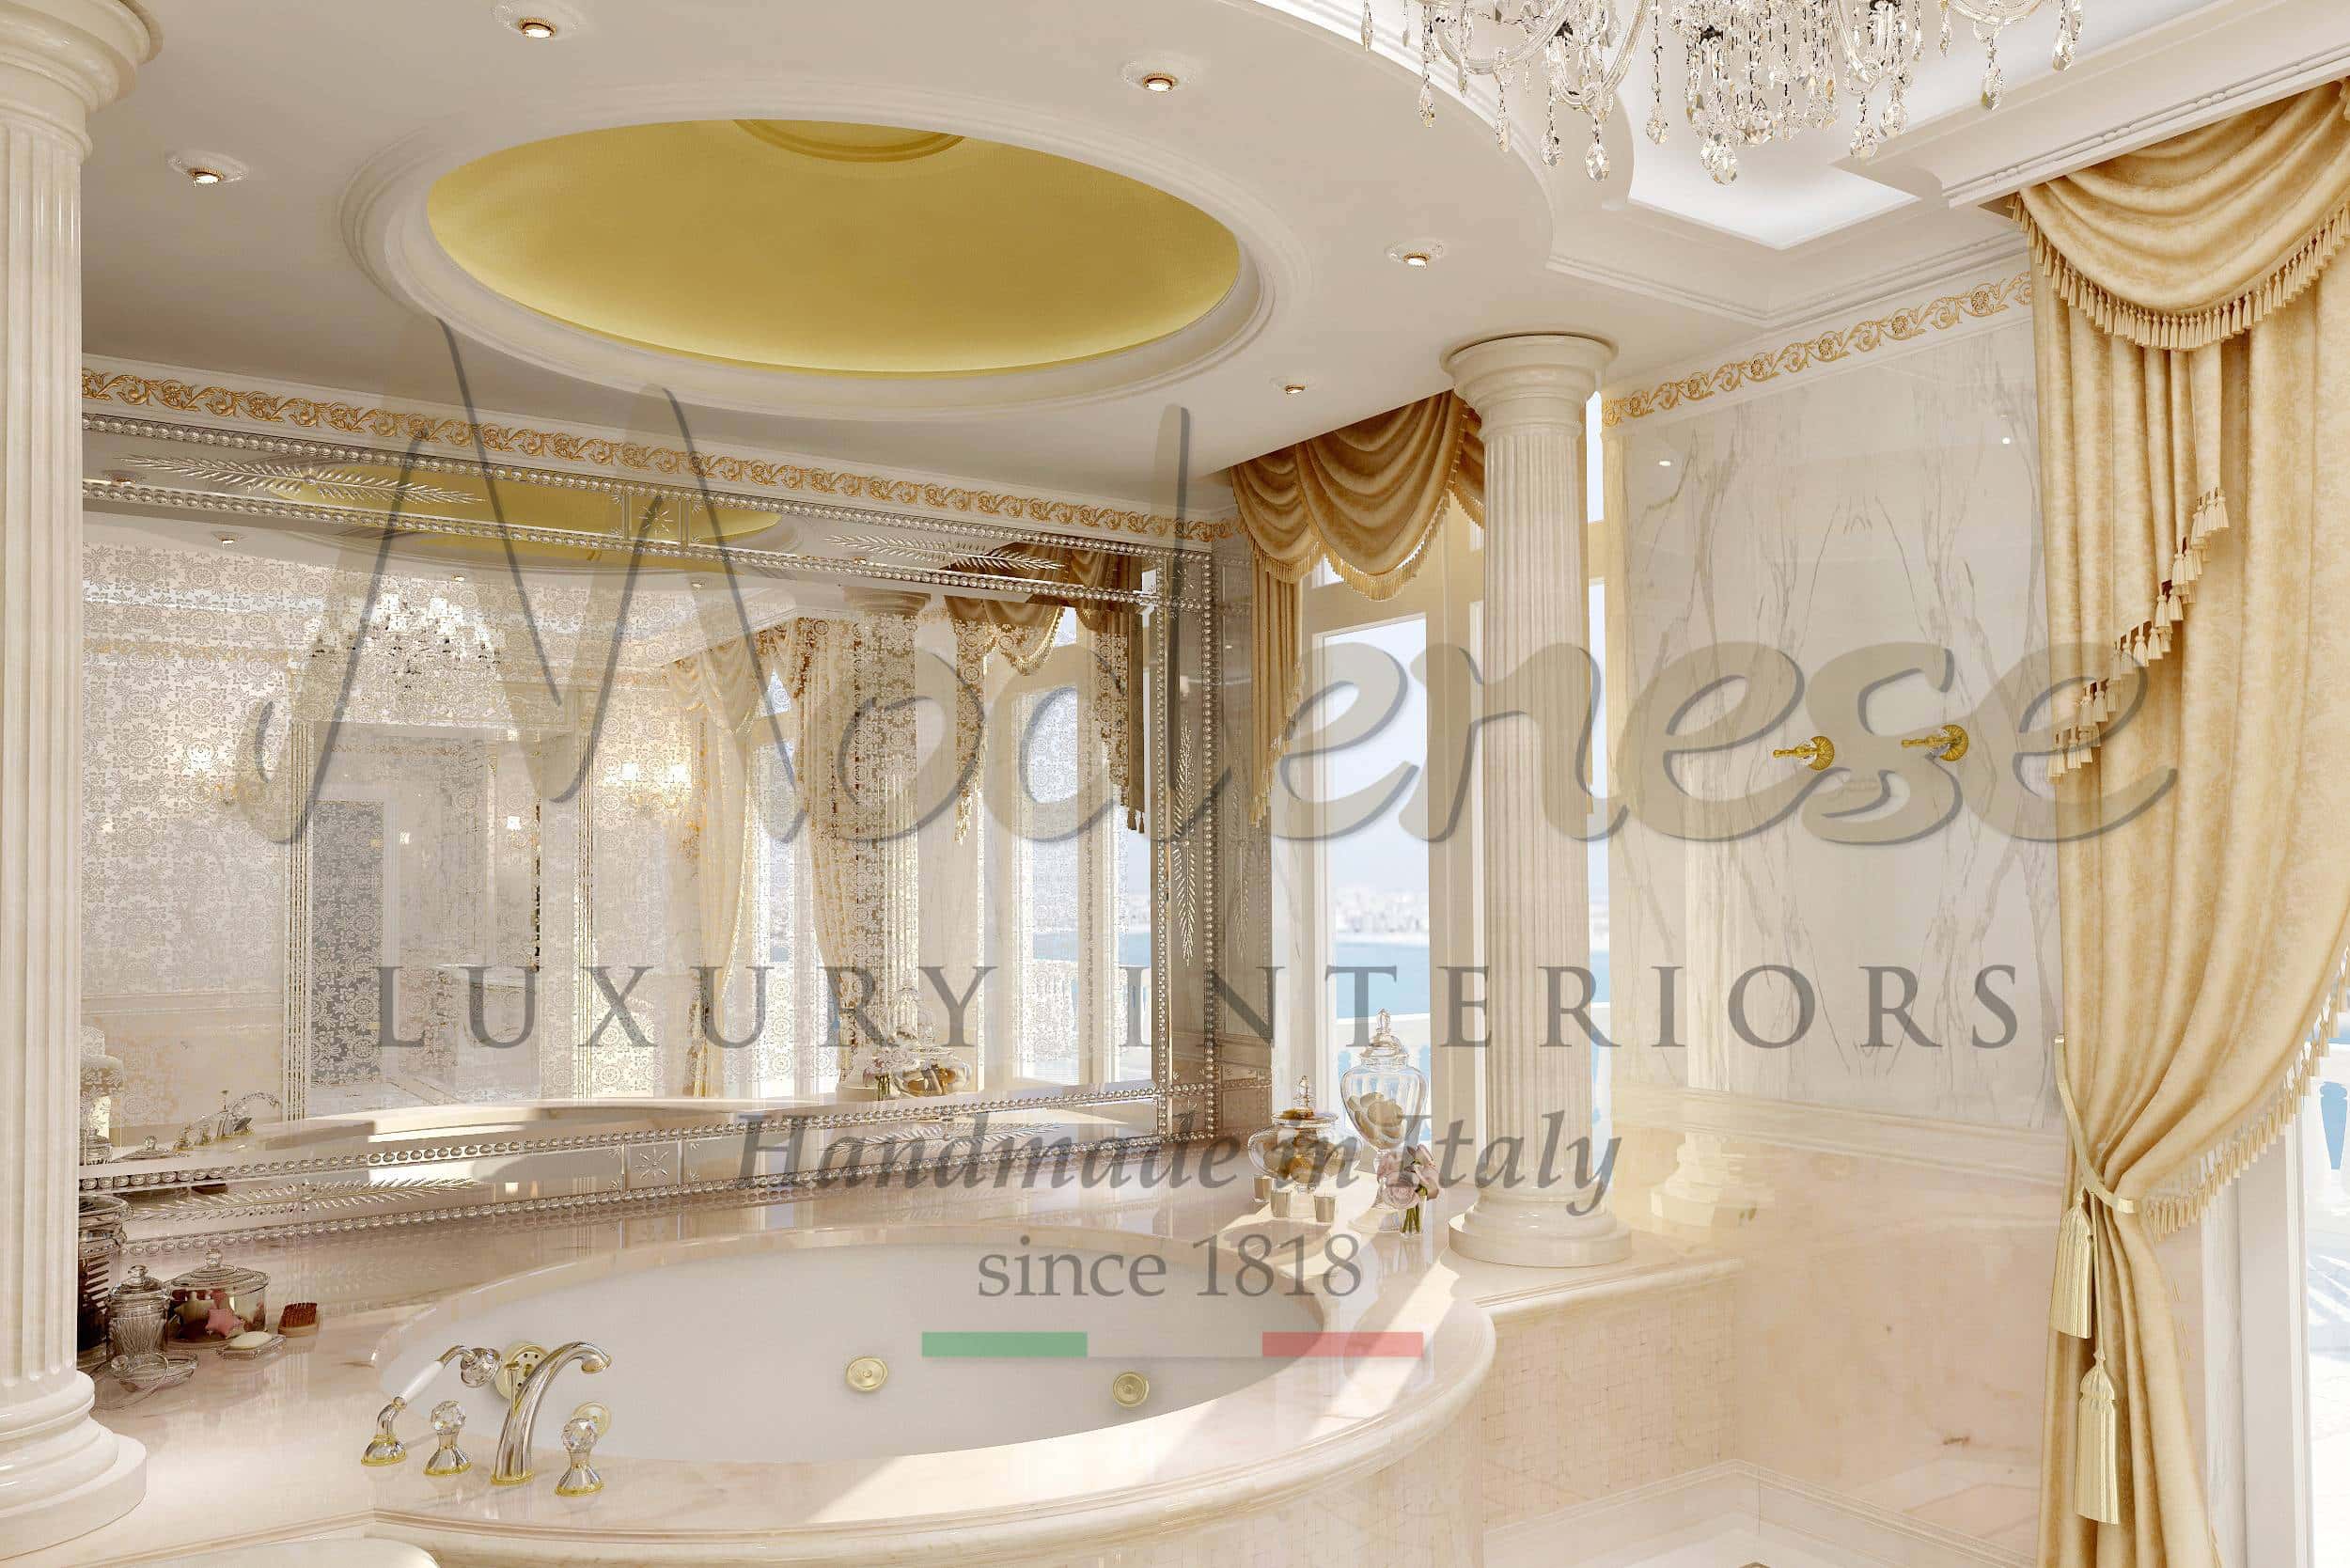 coin beauté personnalisé coiffeur salle de bains de luxe parfumerie meubles style baroque design italien élégance royale classe raffinée précieuse majestueuse décoration résidentielle